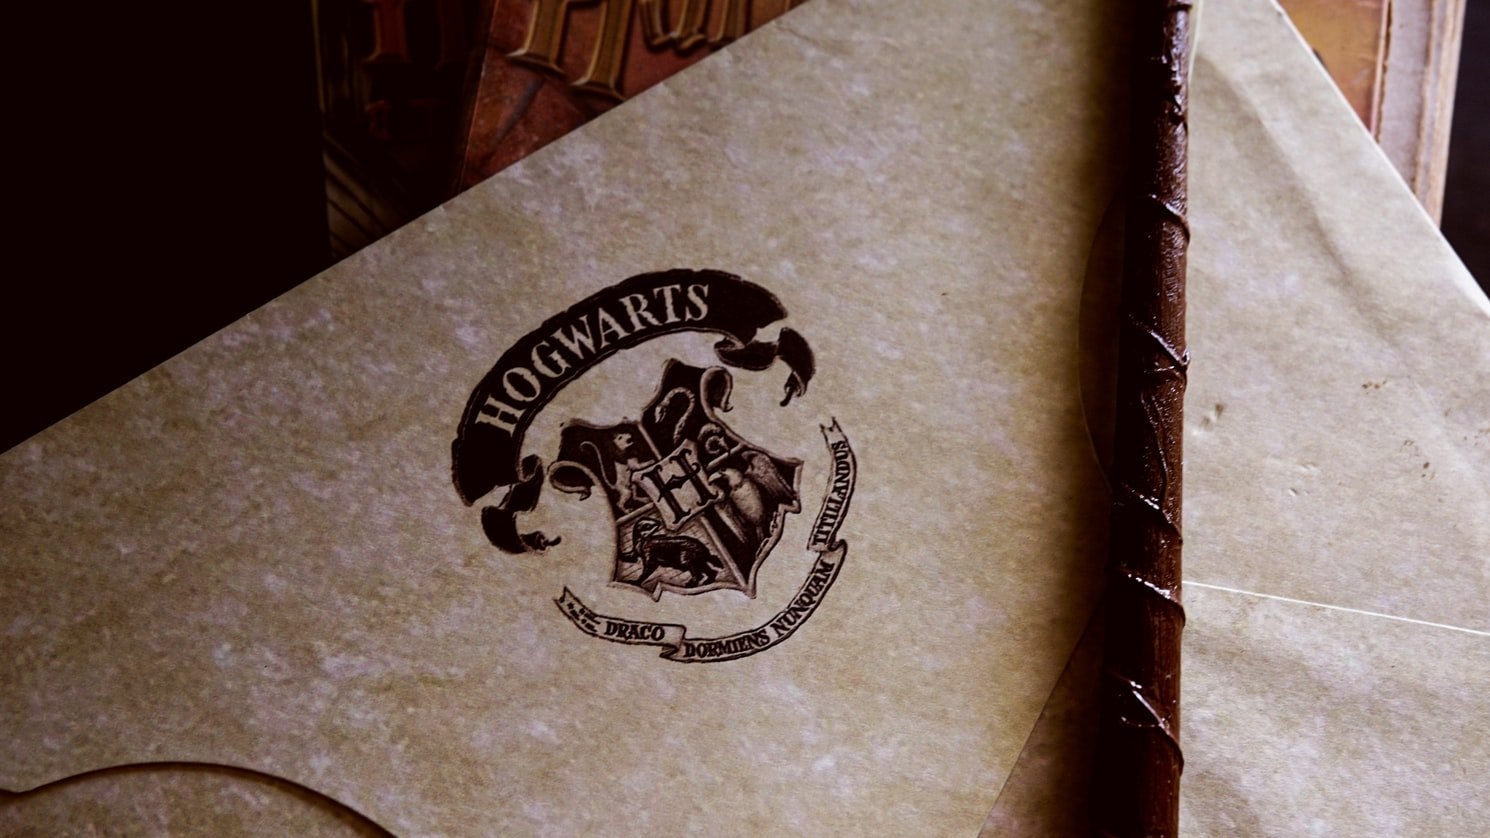 Hogwarts symbol on paper